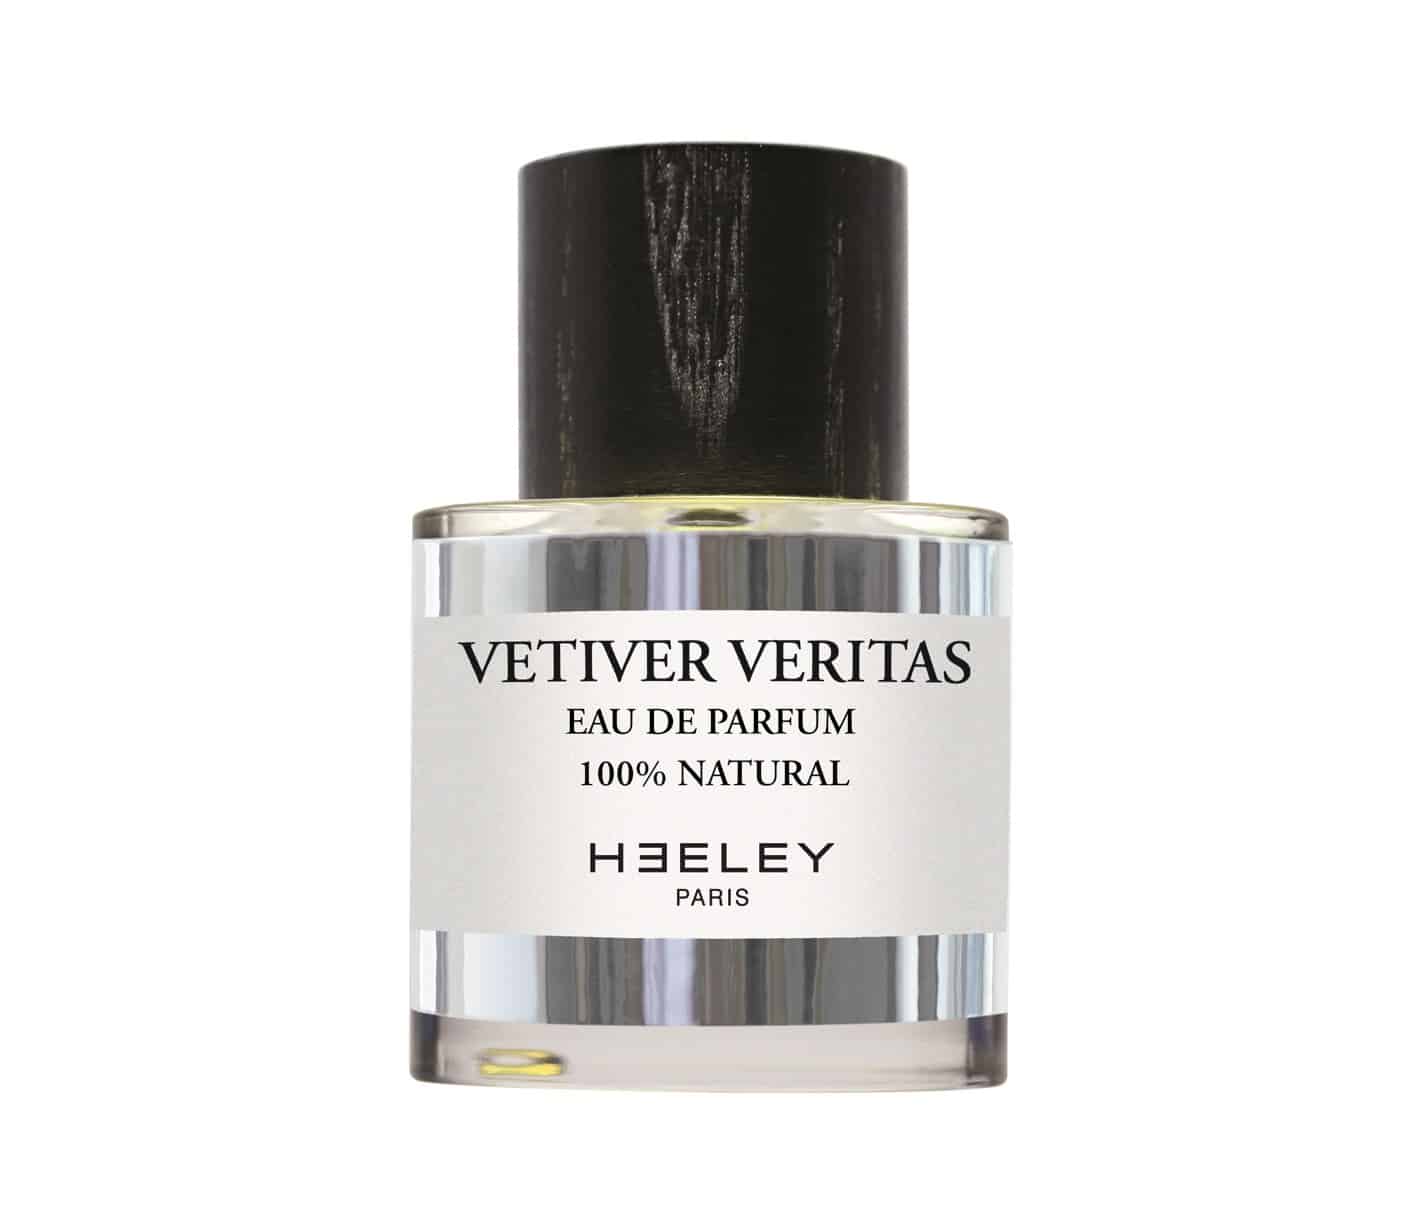 HEELEY PARFUMS presenta Vetiver Veritas, il nuovo profumo 100% naturale